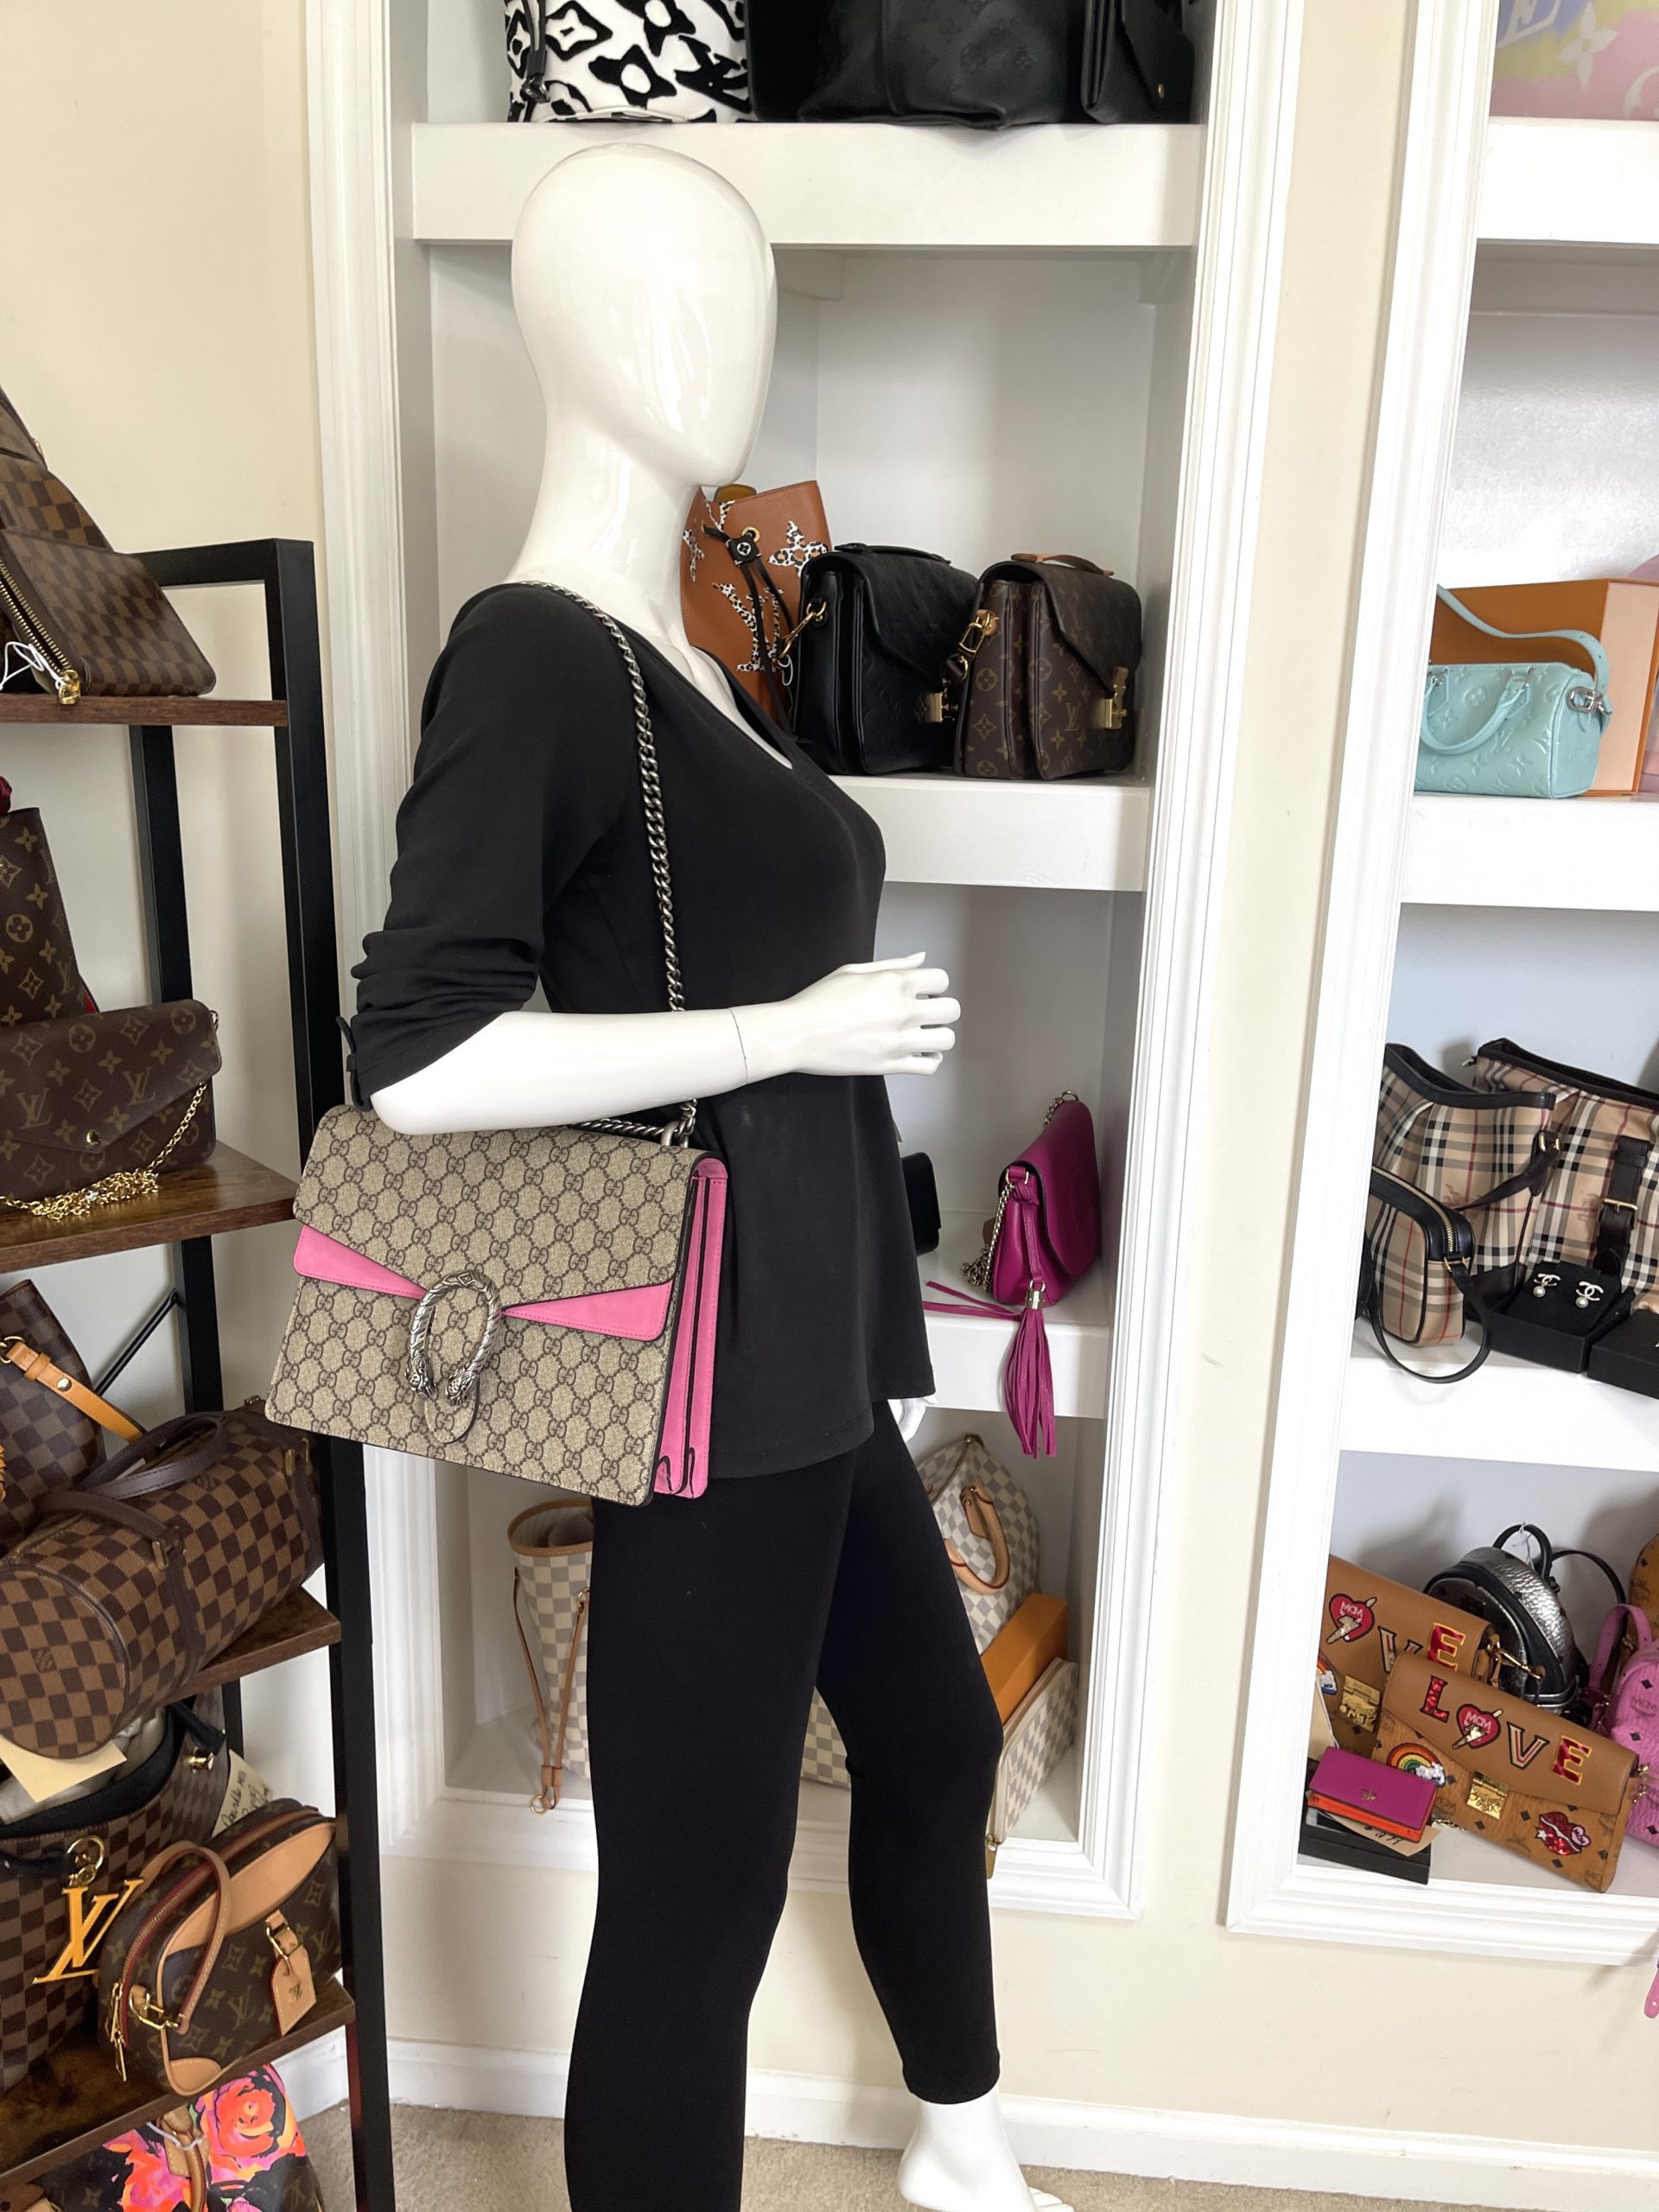 Gucci Supreme Monogram Medium Pink Dionysus Shoulder Bag - A World Of Goods  For You, LLC